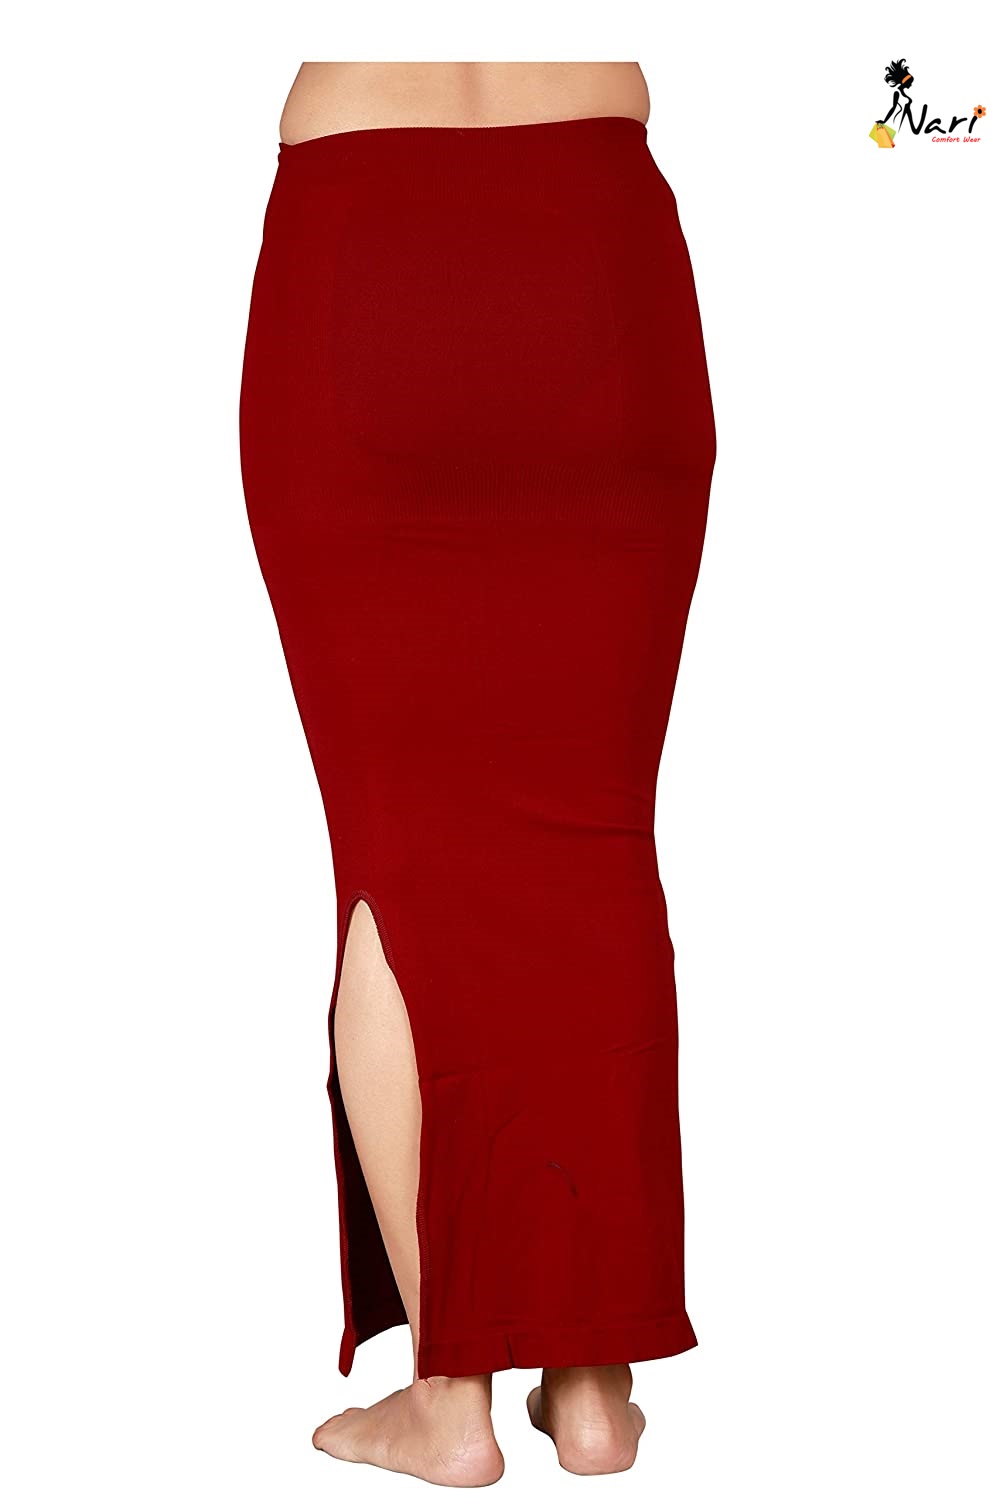 Saree Shapewear Petticoat for Women 4008 Saree Shaper Maroon - Nari